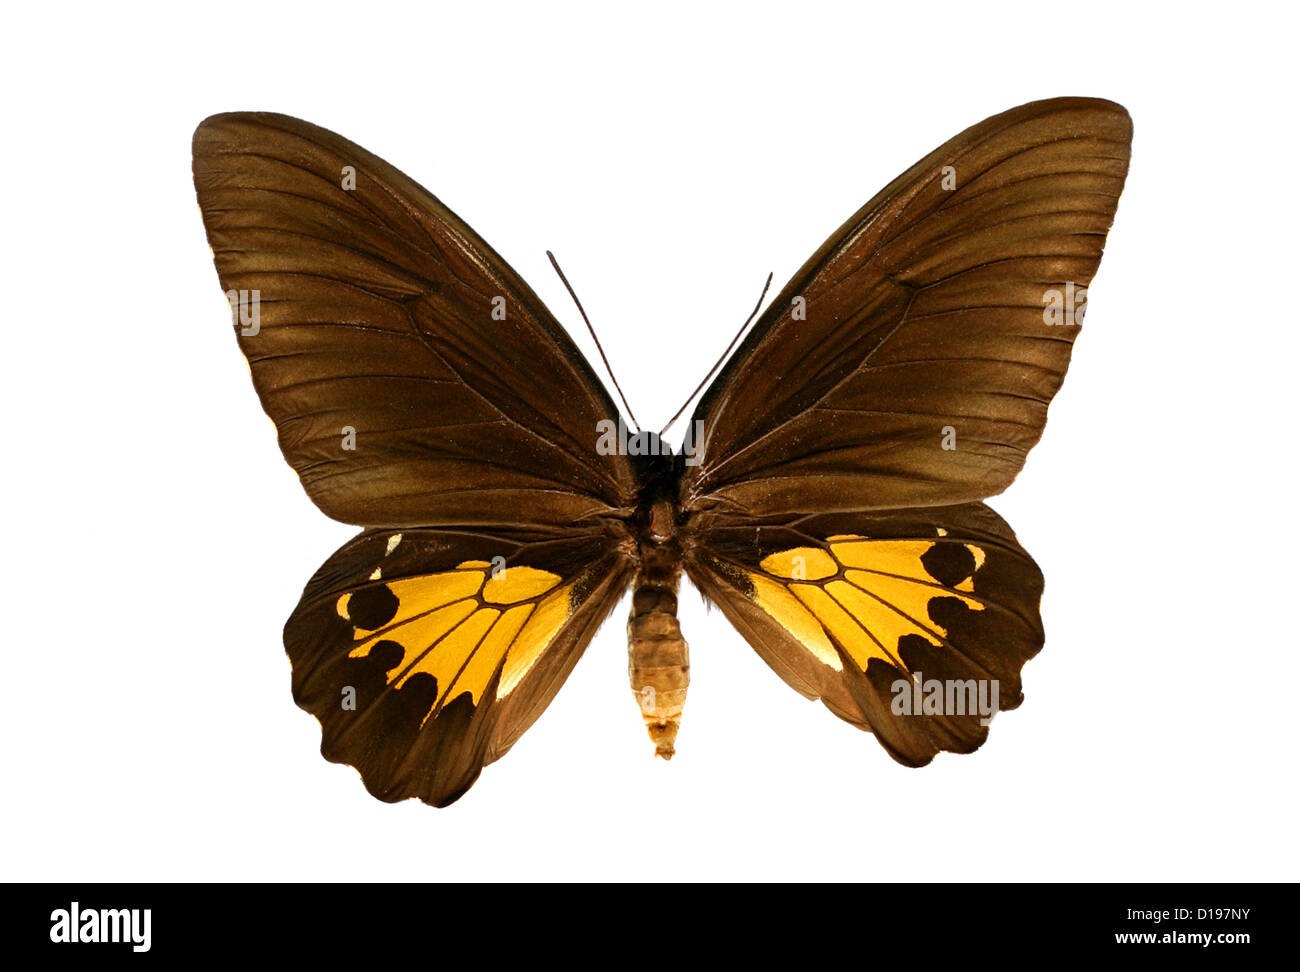 Gemeinsamen Birdwing Schmetterling, Troides Helena, Papilionidae, Lepidoptera. Weiblich. Indien und Asien. Stockfoto